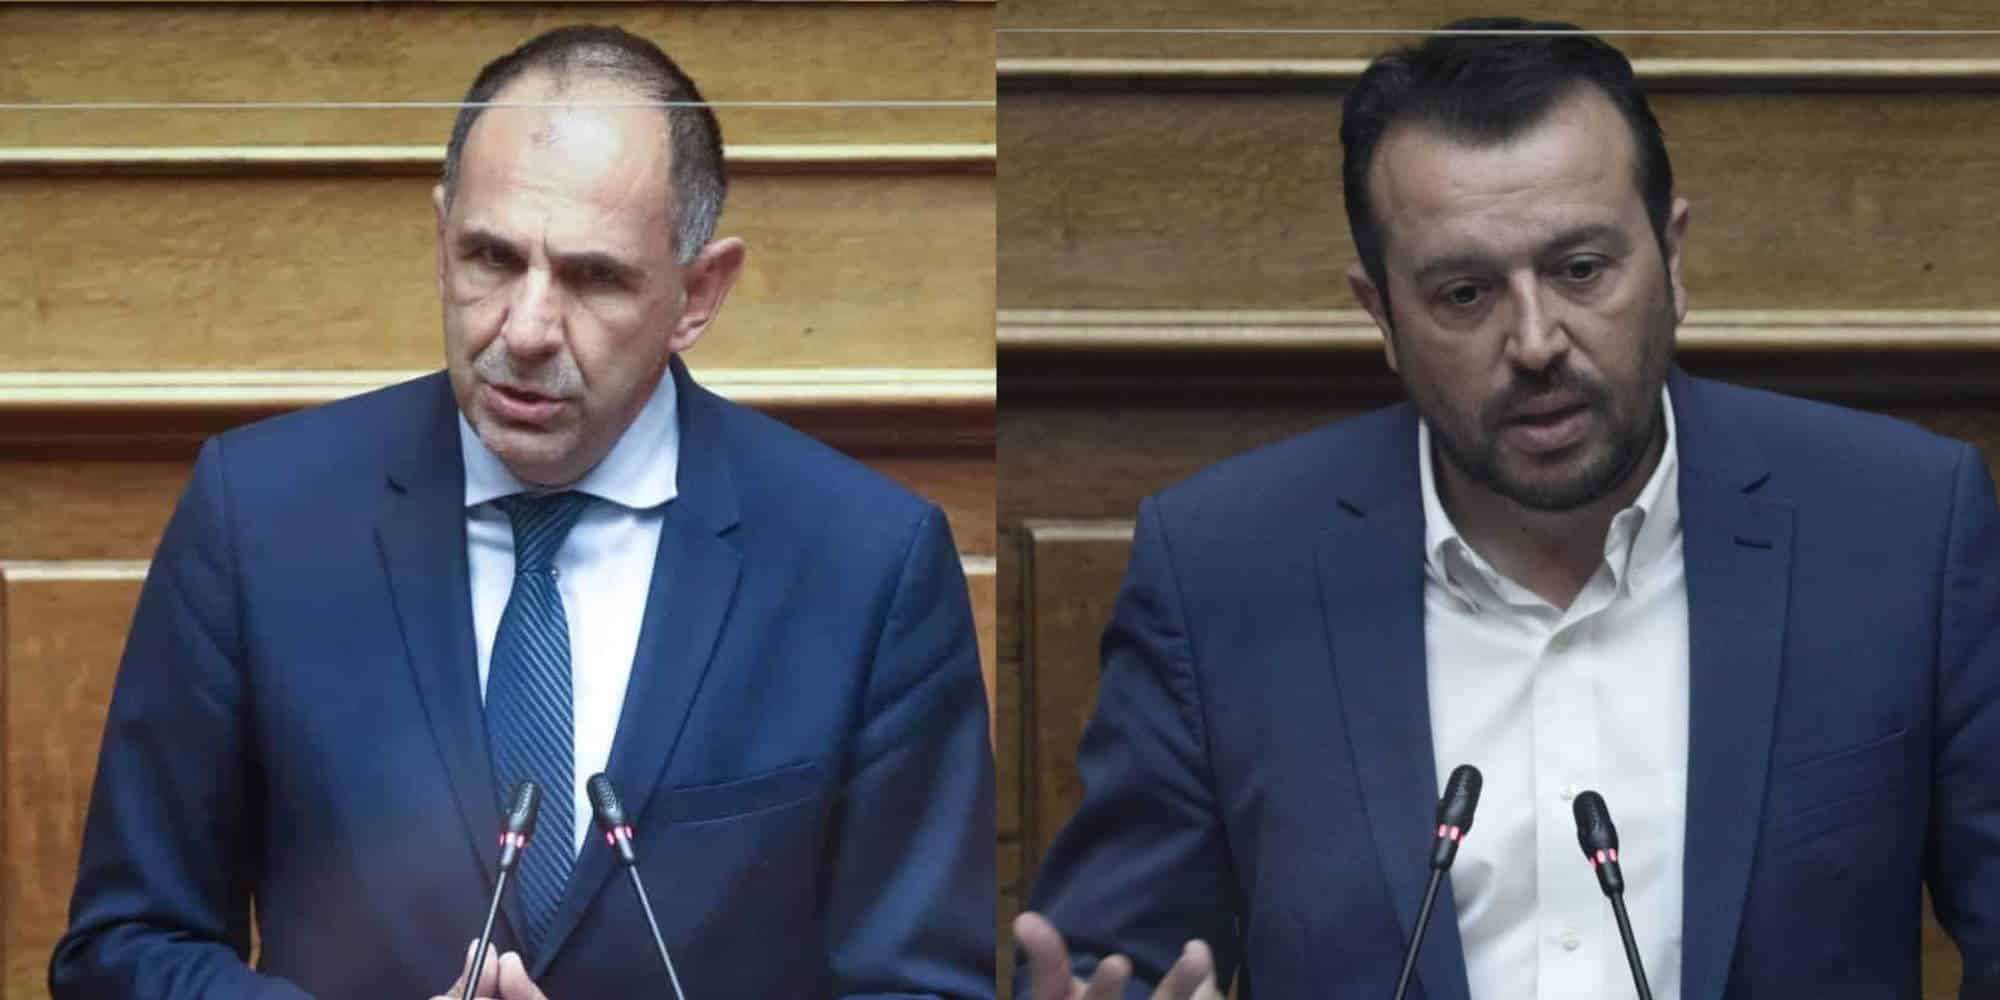 Ο υπουργός Επικρατείας, Γιώργος Γεραπετρίτης (δεξιά) και ο βουλευτής ΣΥΡΙΖΑ, Νίκος Παππάς (αριστερά), στο Βήμα της Βουλής / Φωτογραφία κολάζ / Eurokinissi